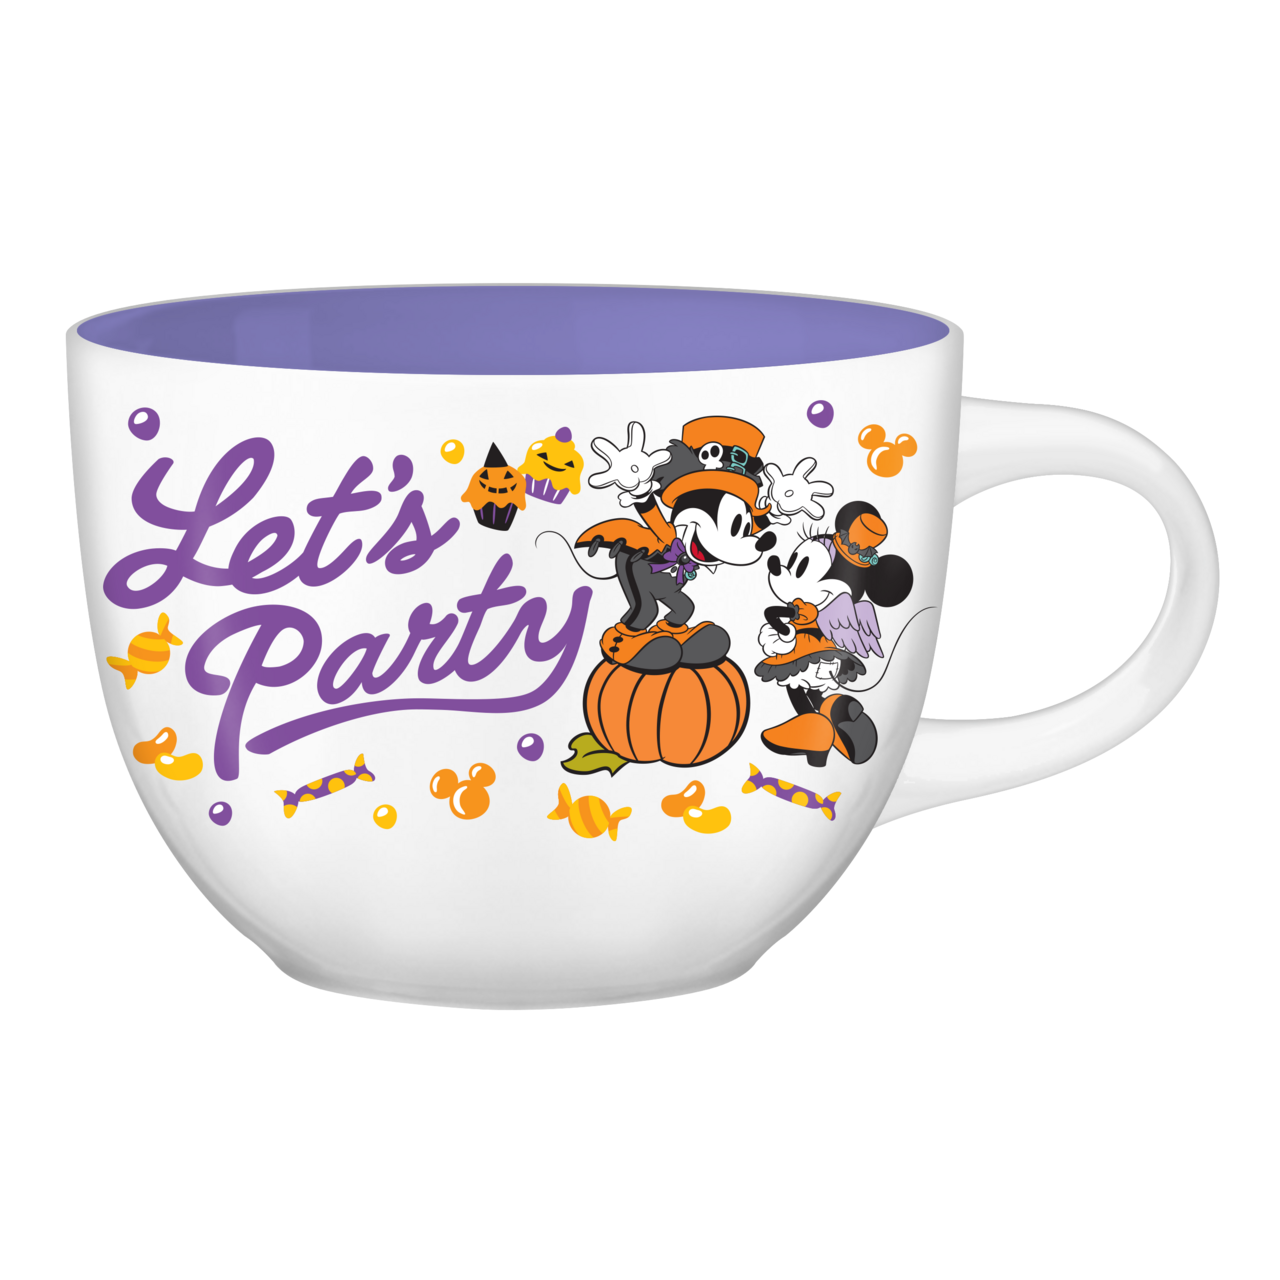 Disney Minnie Mouse Cafe Soup Mug